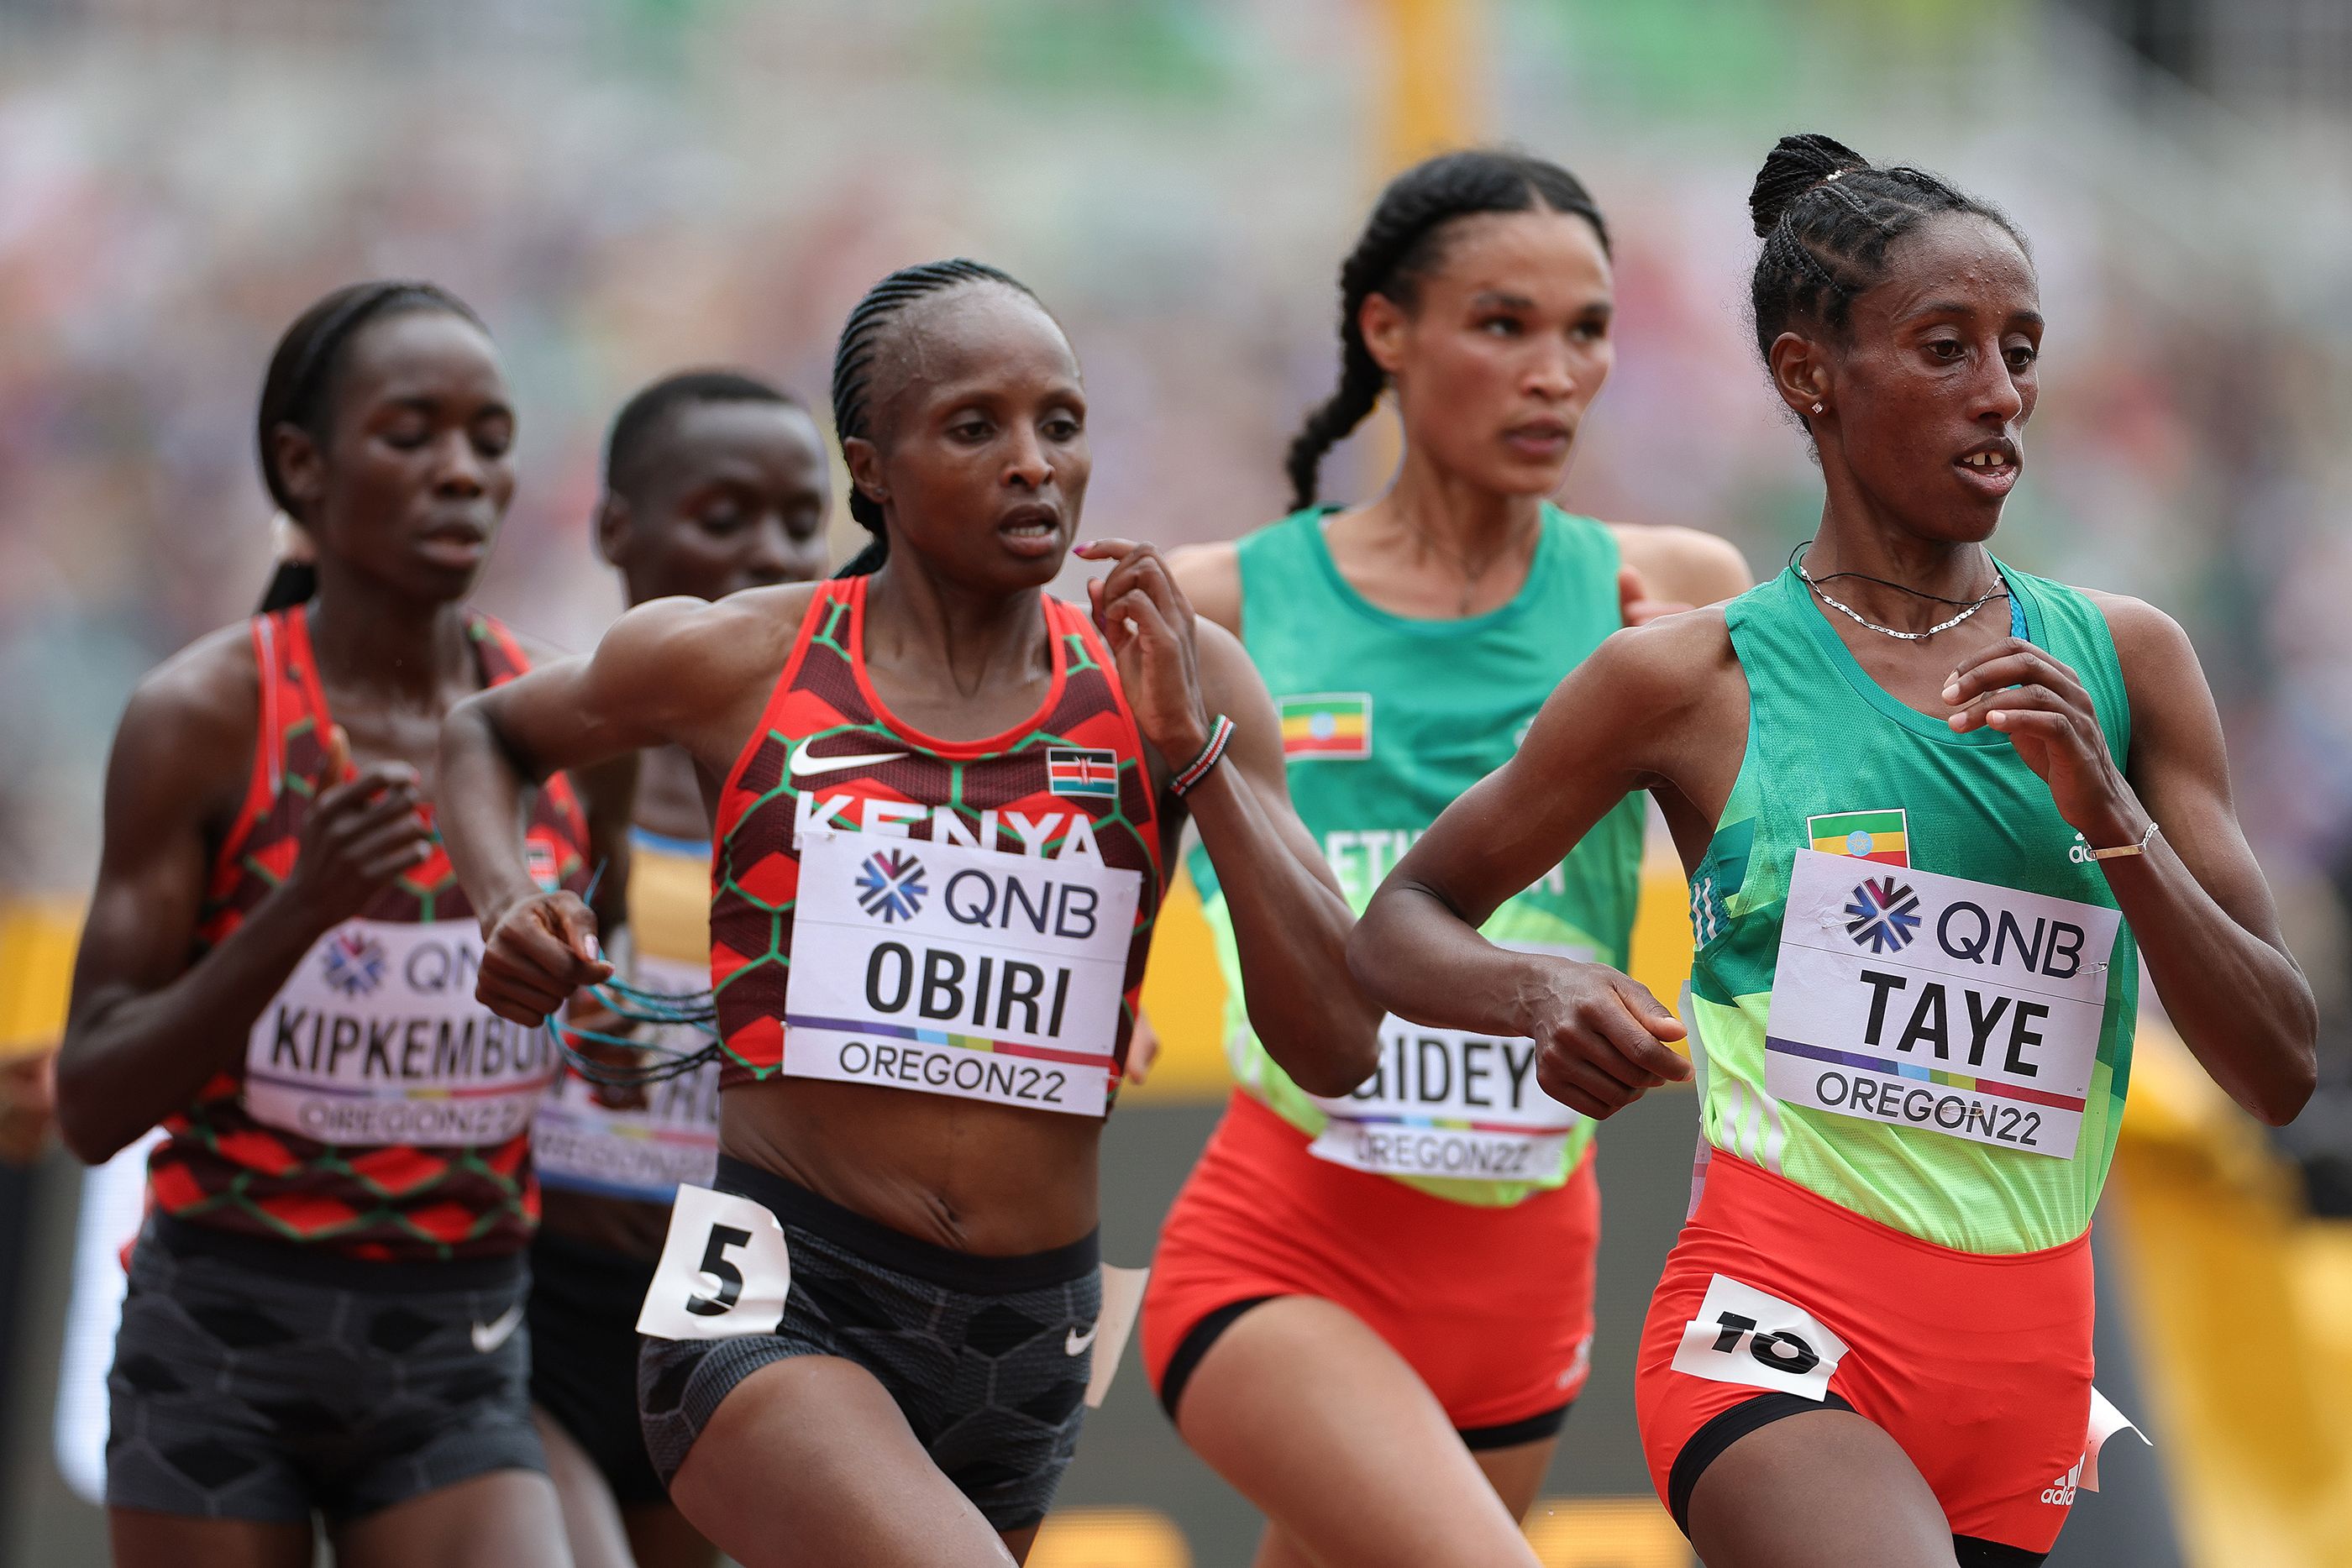 Hellen Obiri, Letesenbet Gidey and Ejgayehu Taye in the 10,000m final in Oregon